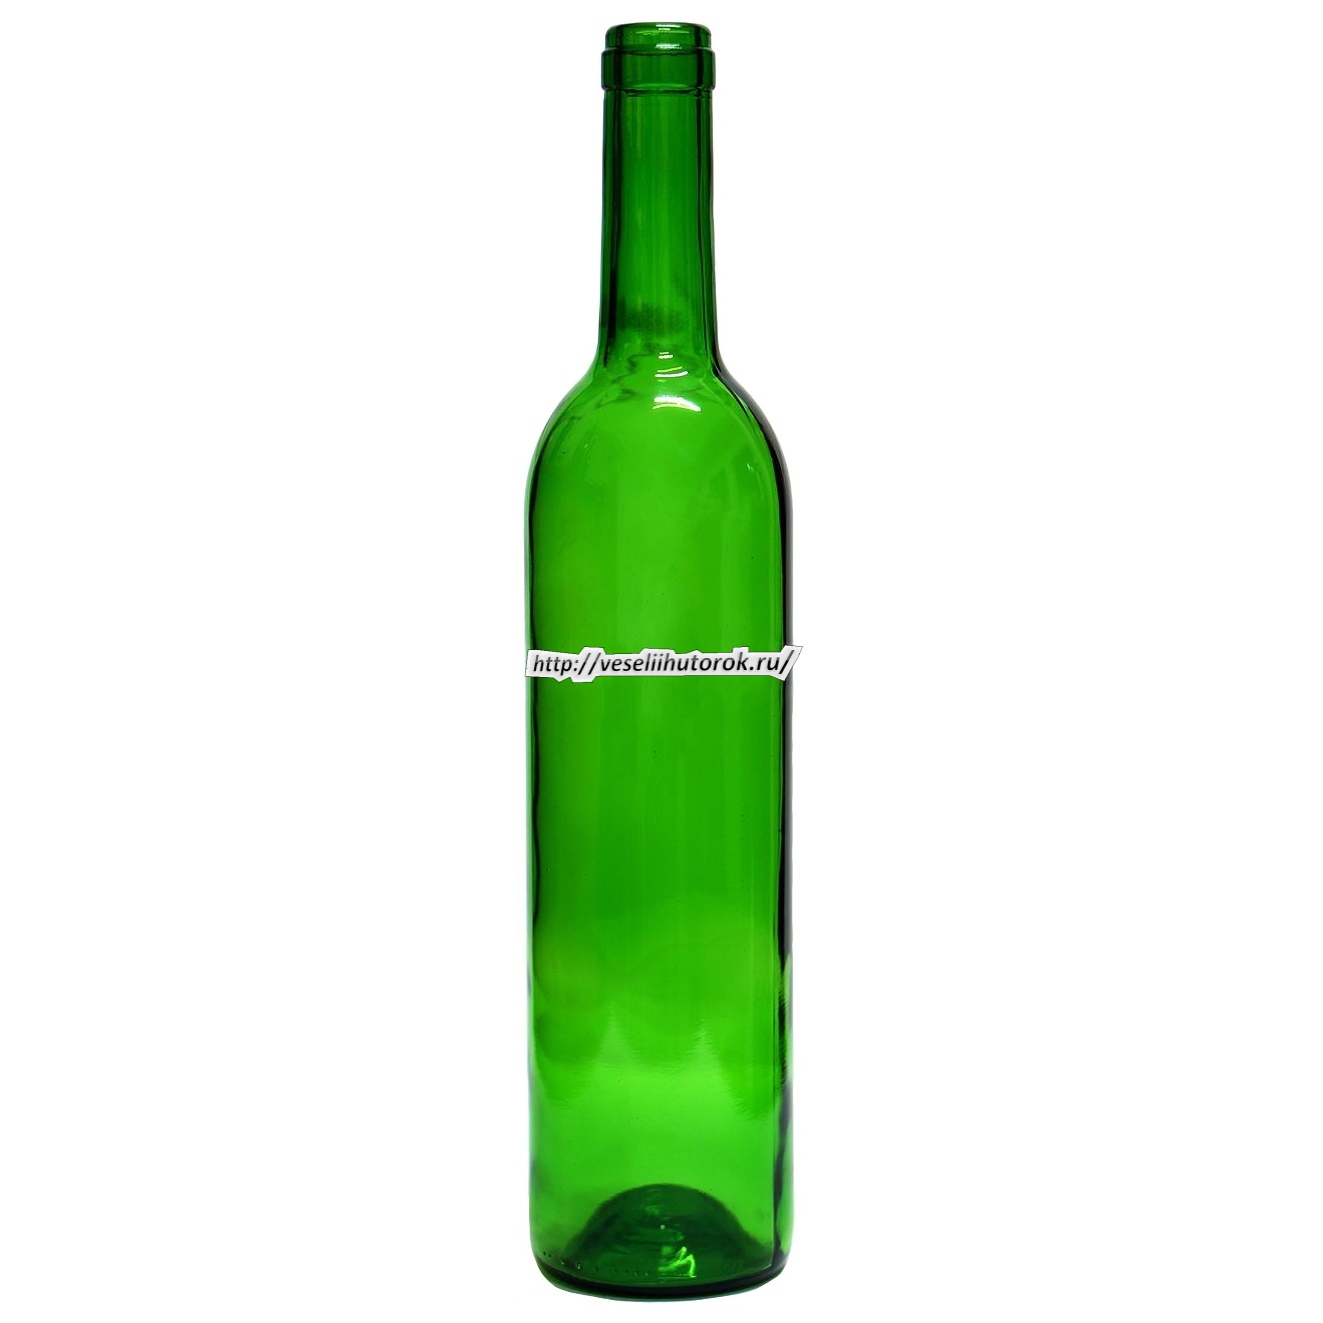 Бутылку купить новую. Бутылка винная "бордо", 0.75 л. Бутылка винная 1.5 литра бордо. Бутылка винная Бургундия 0,75. Бутылка стеклянная бордо, оливковая, 0.75л (750мл).